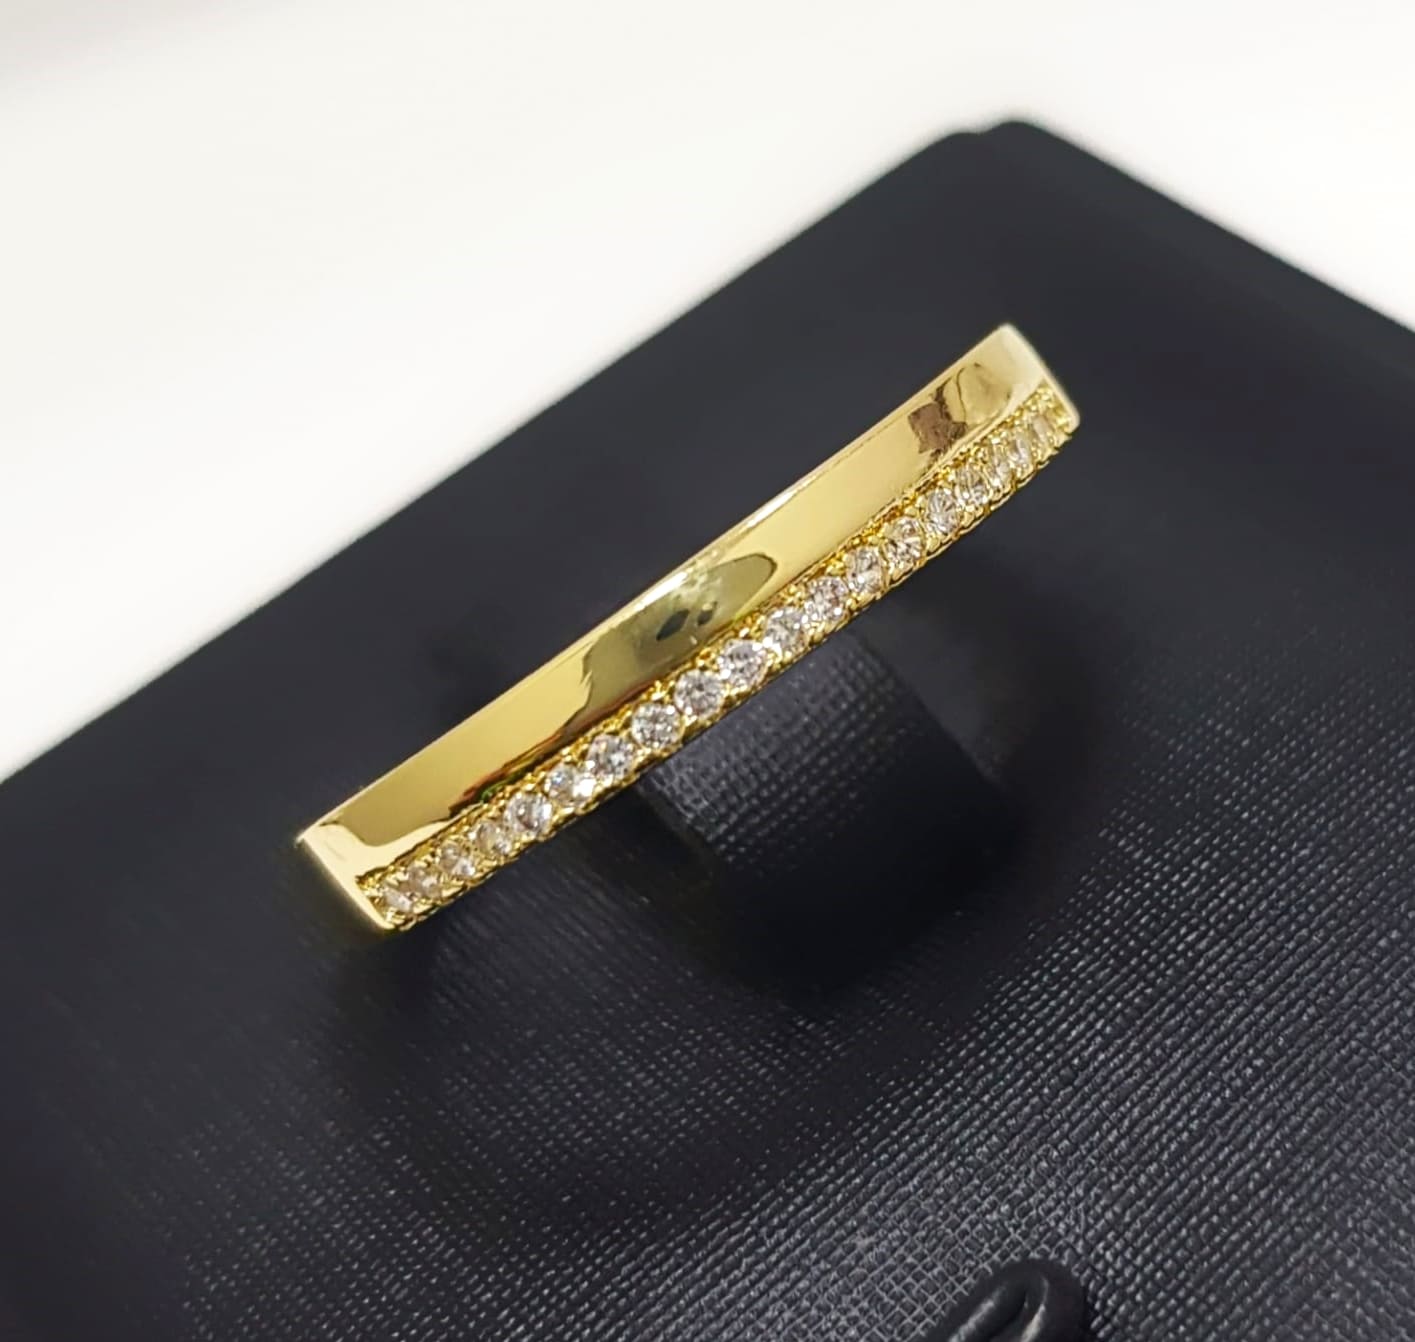 Anel Meia Aliança Liso com Micro Zircônia Cristal Banhado em Ouro18k  - Lazzuli Joias